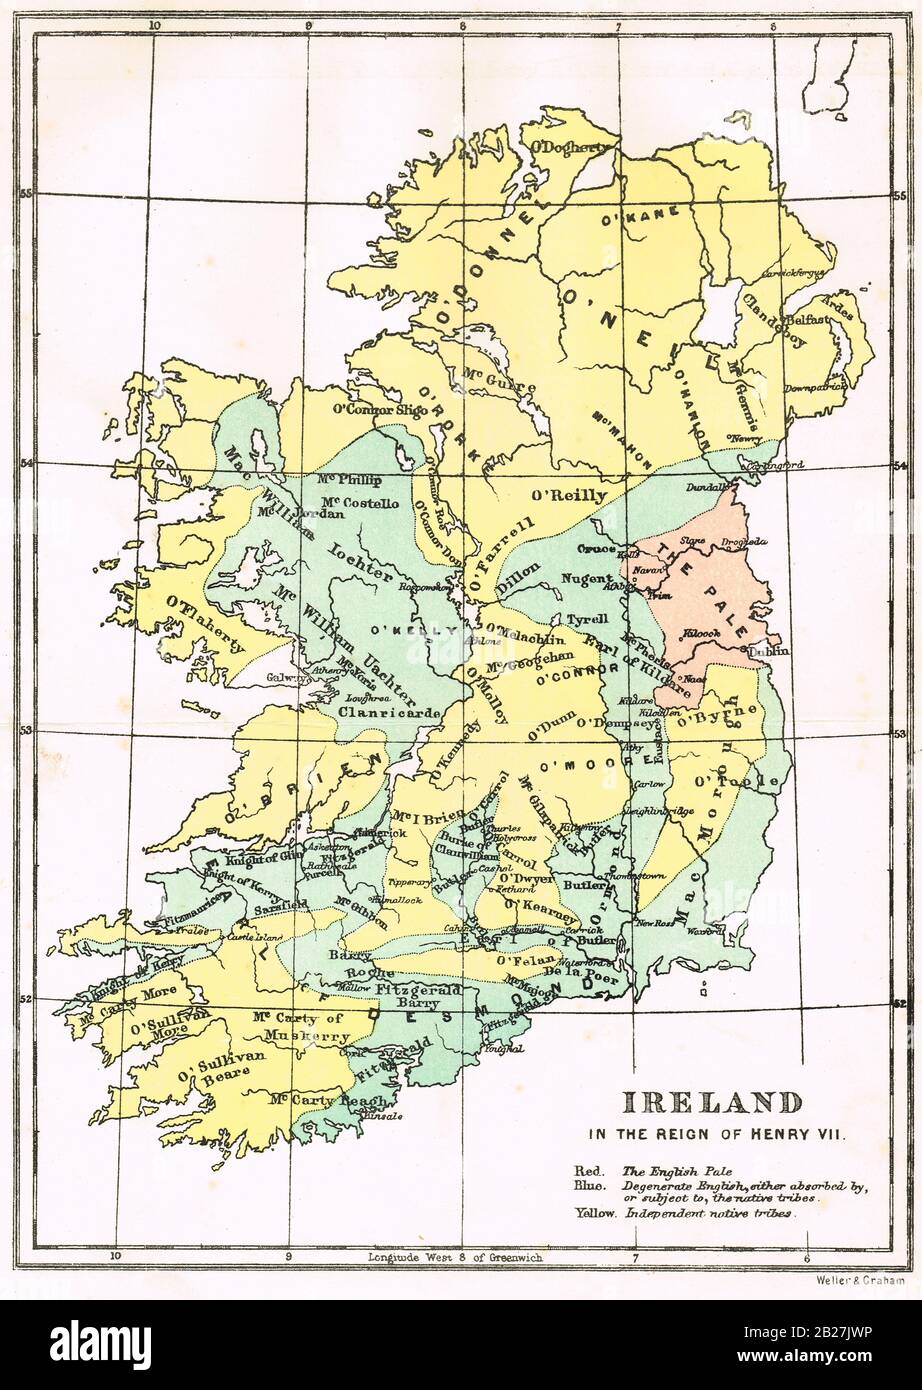 Mapa de Irlanda, en el reinado de Enrique VII, mostrando el cuento Inglés, Degenerar Inglés, y tribus nativas independientes Foto de stock